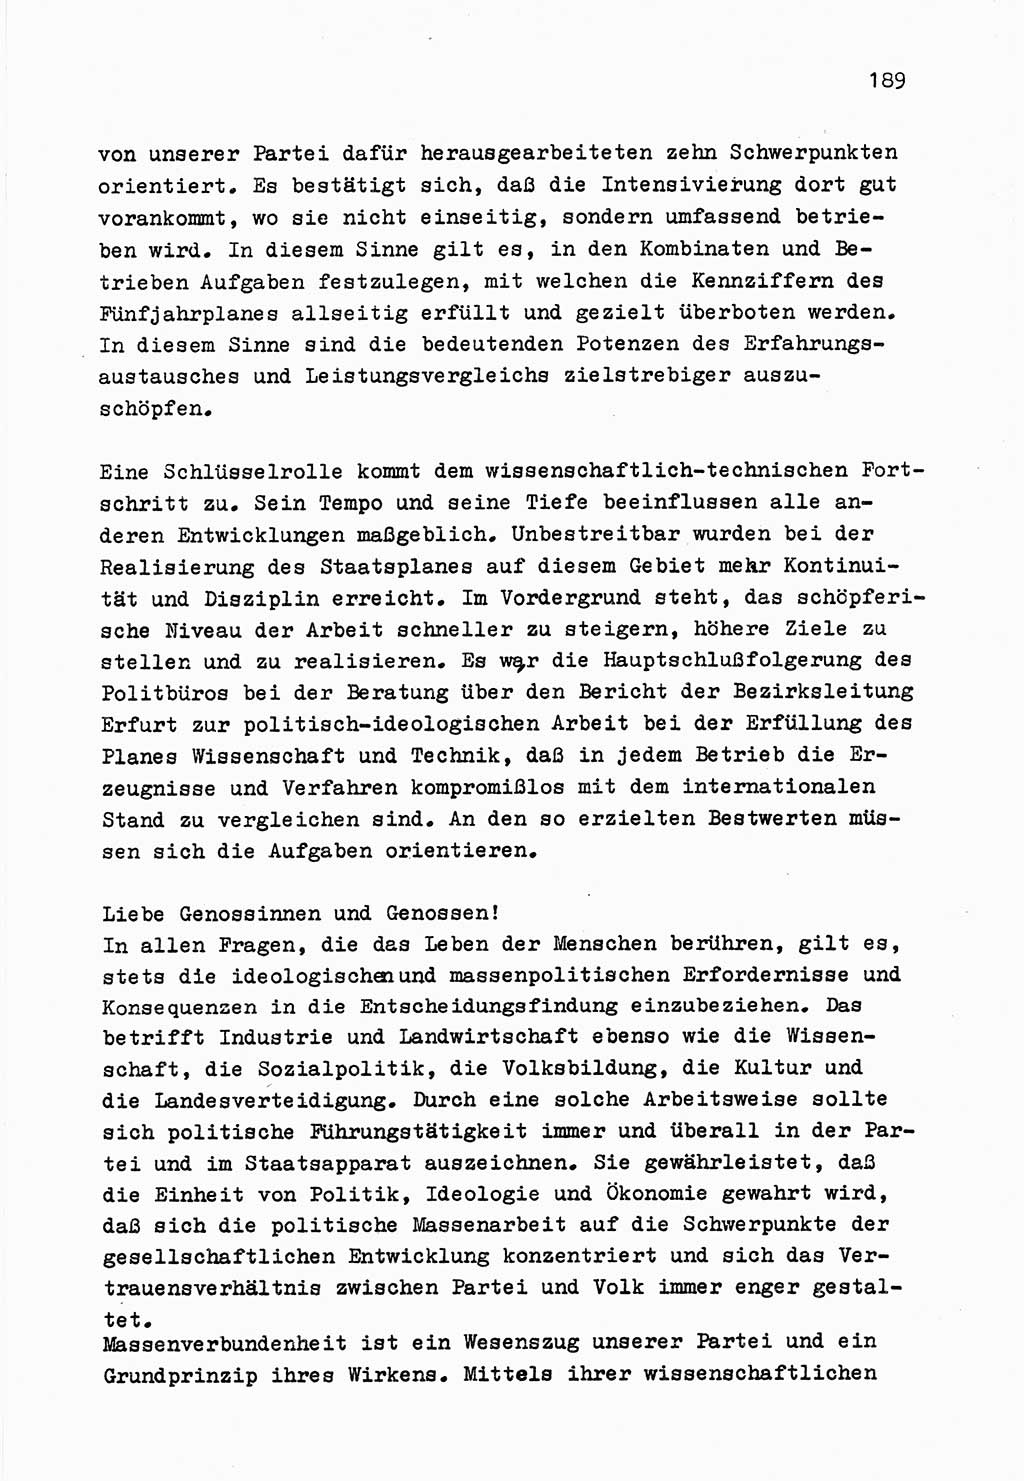 Zu Fragen der Parteiarbeit [Sozialistische Einheitspartei Deutschlands (SED) Deutsche Demokratische Republik (DDR)] 1979, Seite 189 (Fr. PA SED DDR 1979, S. 189)